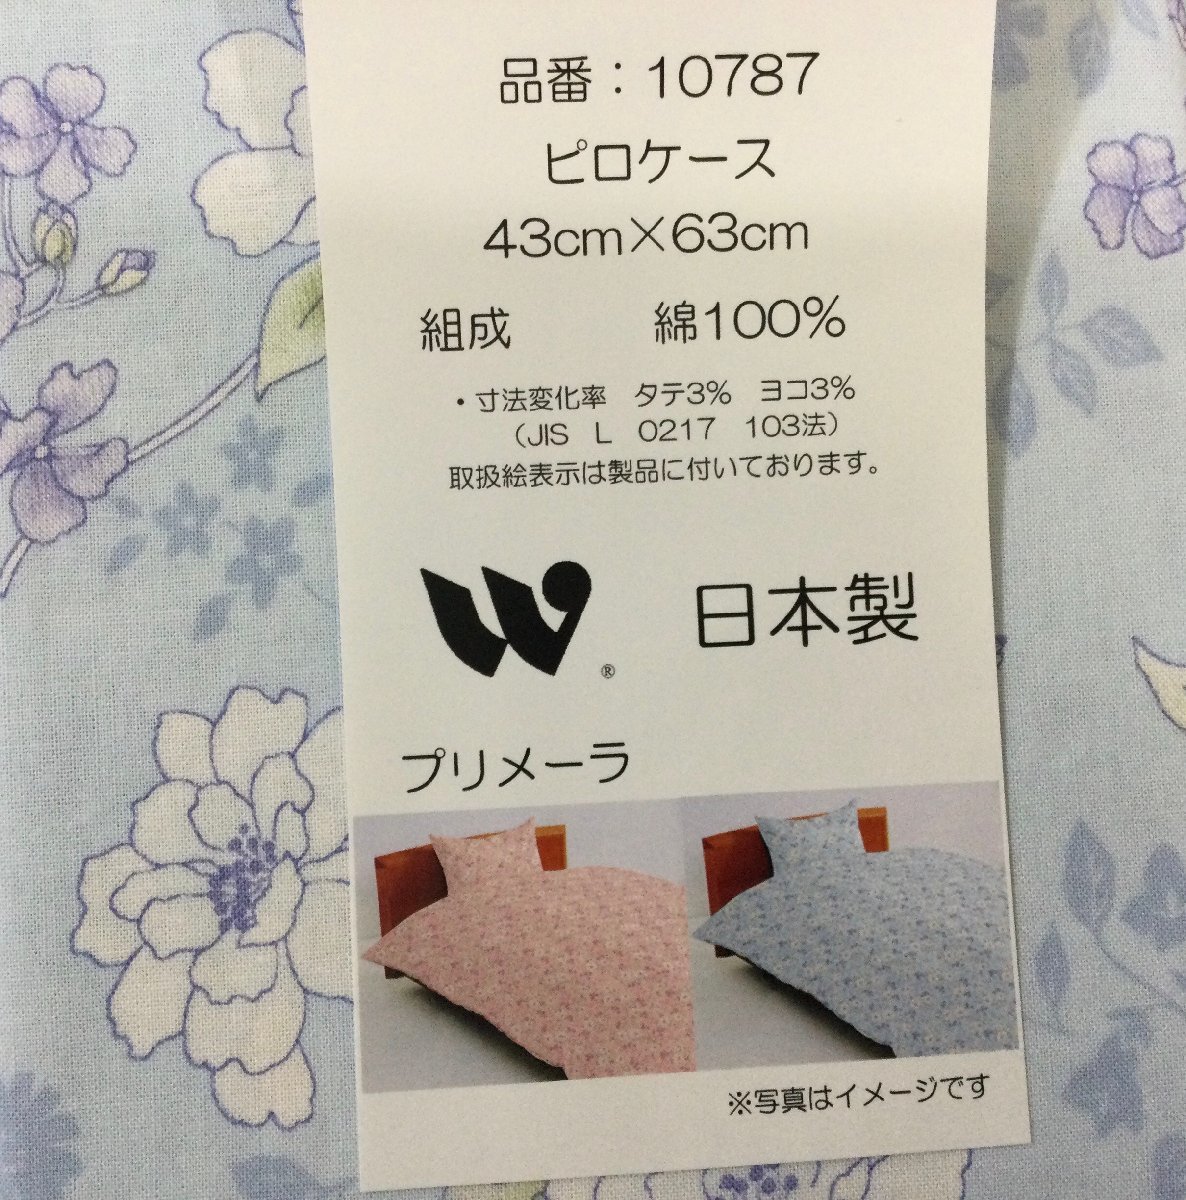 * pillow кейс ( подушка покрытие )*43x63.* хлопок 100%* двусторонний такой же ткань использование * inserting ., застежка-молния * сделано в Японии * оттенок голубого * стоимость доставки 185 иен 